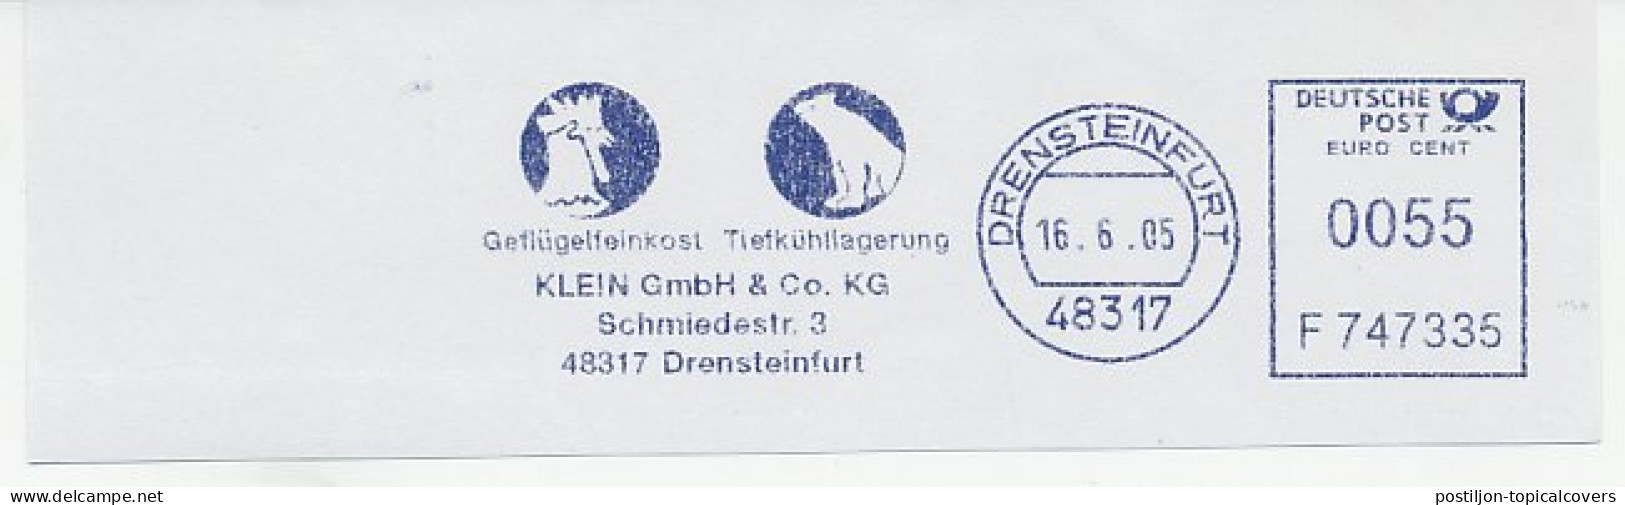 Meter Cut Germany 2005 Polar Bear - Cock - Spedizioni Artiche